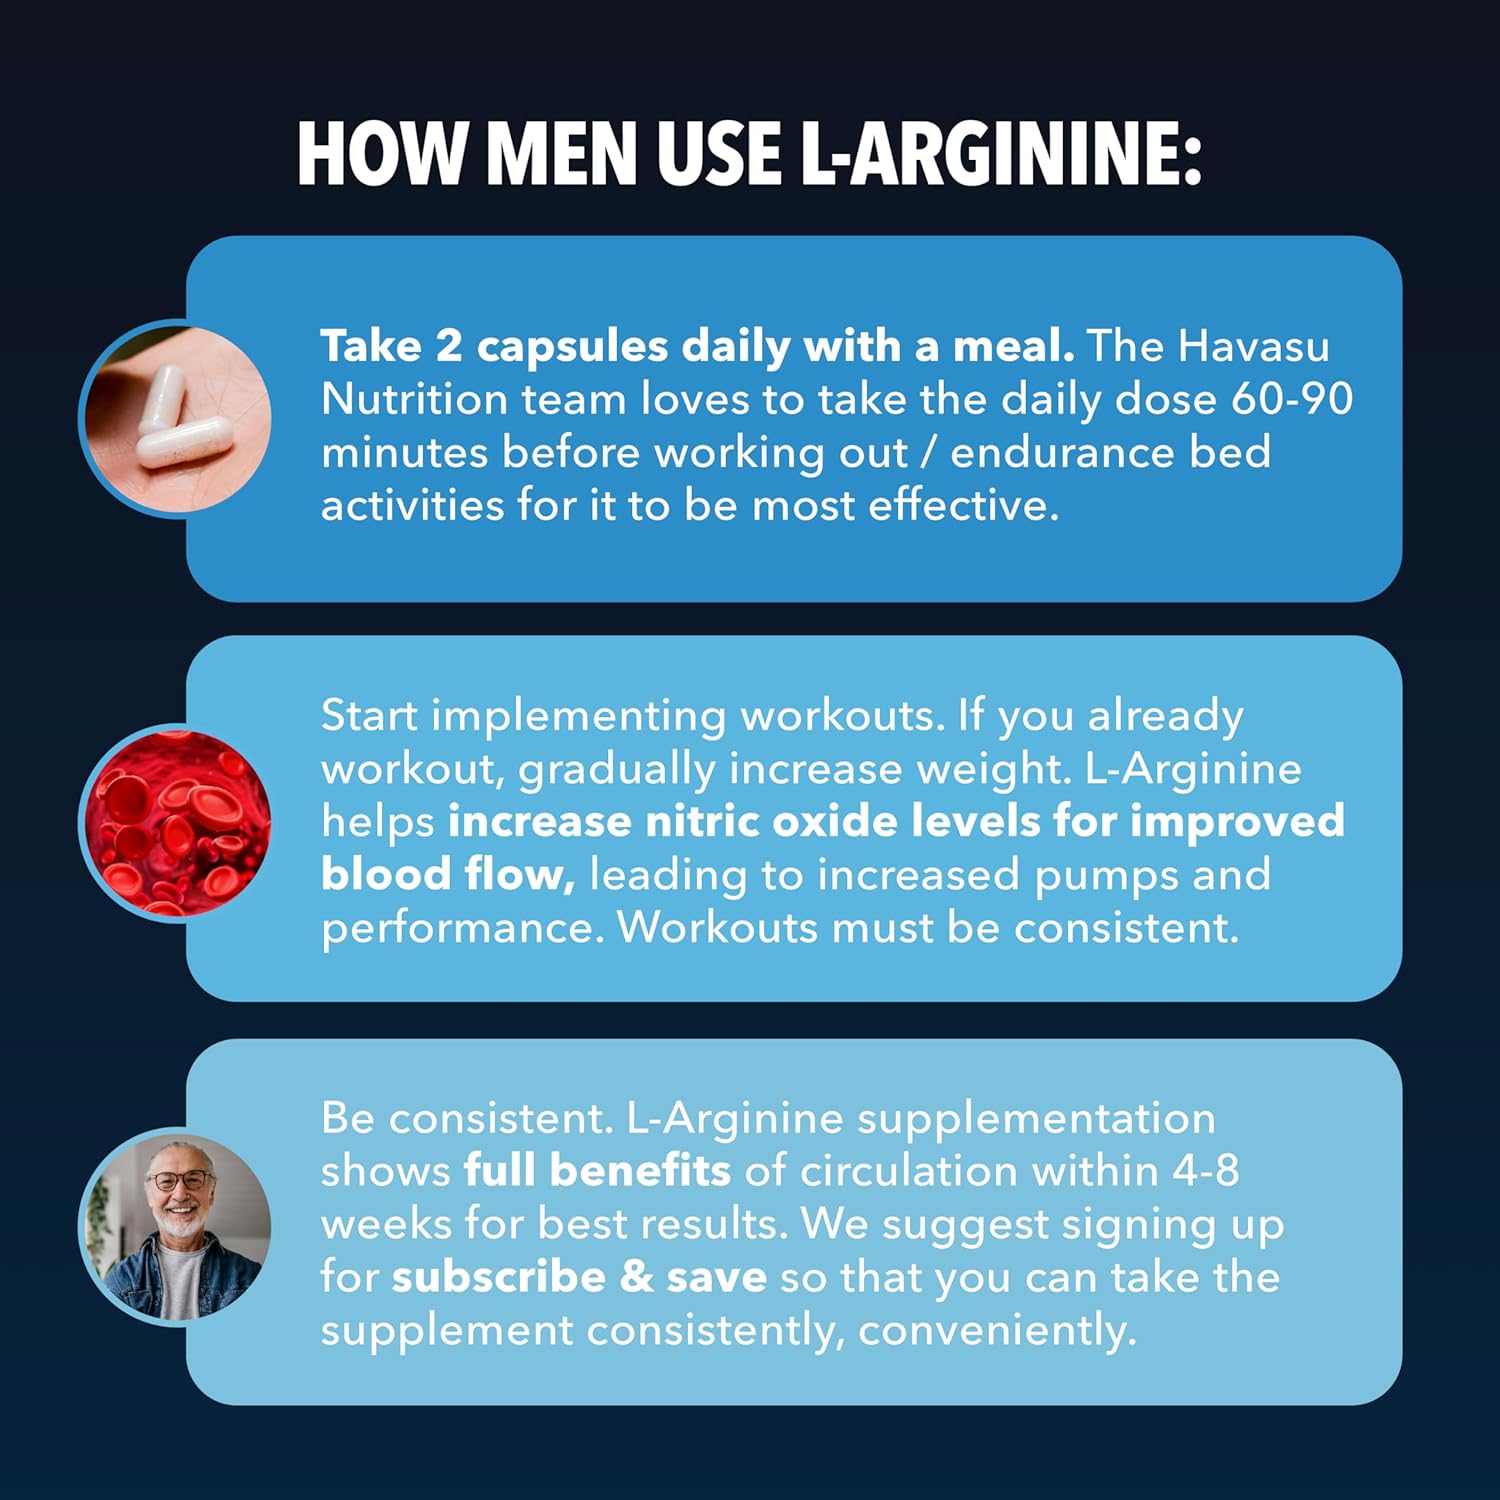 Havasu Nutrition L-Arginine, Extra Strength Supplement -60 Capsules